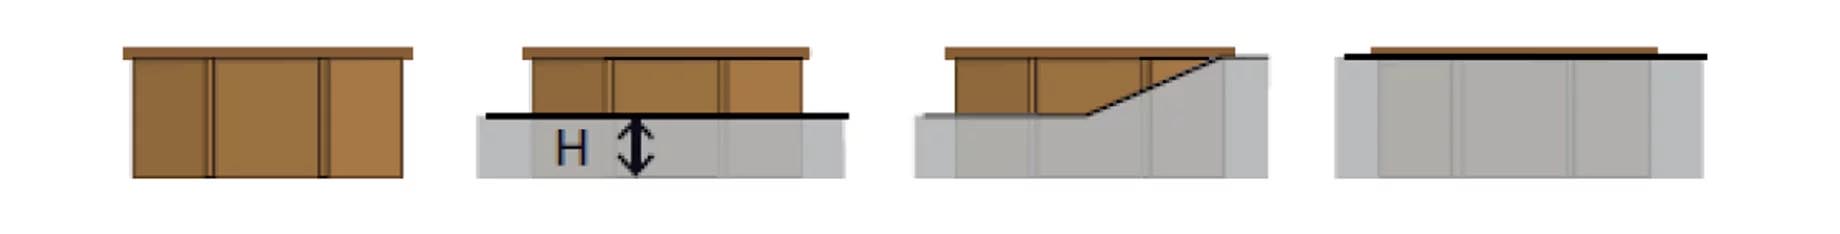 Piscine en bois rectangulaire en kit Mango – 618 x 320 cm H 1,33 m – Sunbay GRÉ 